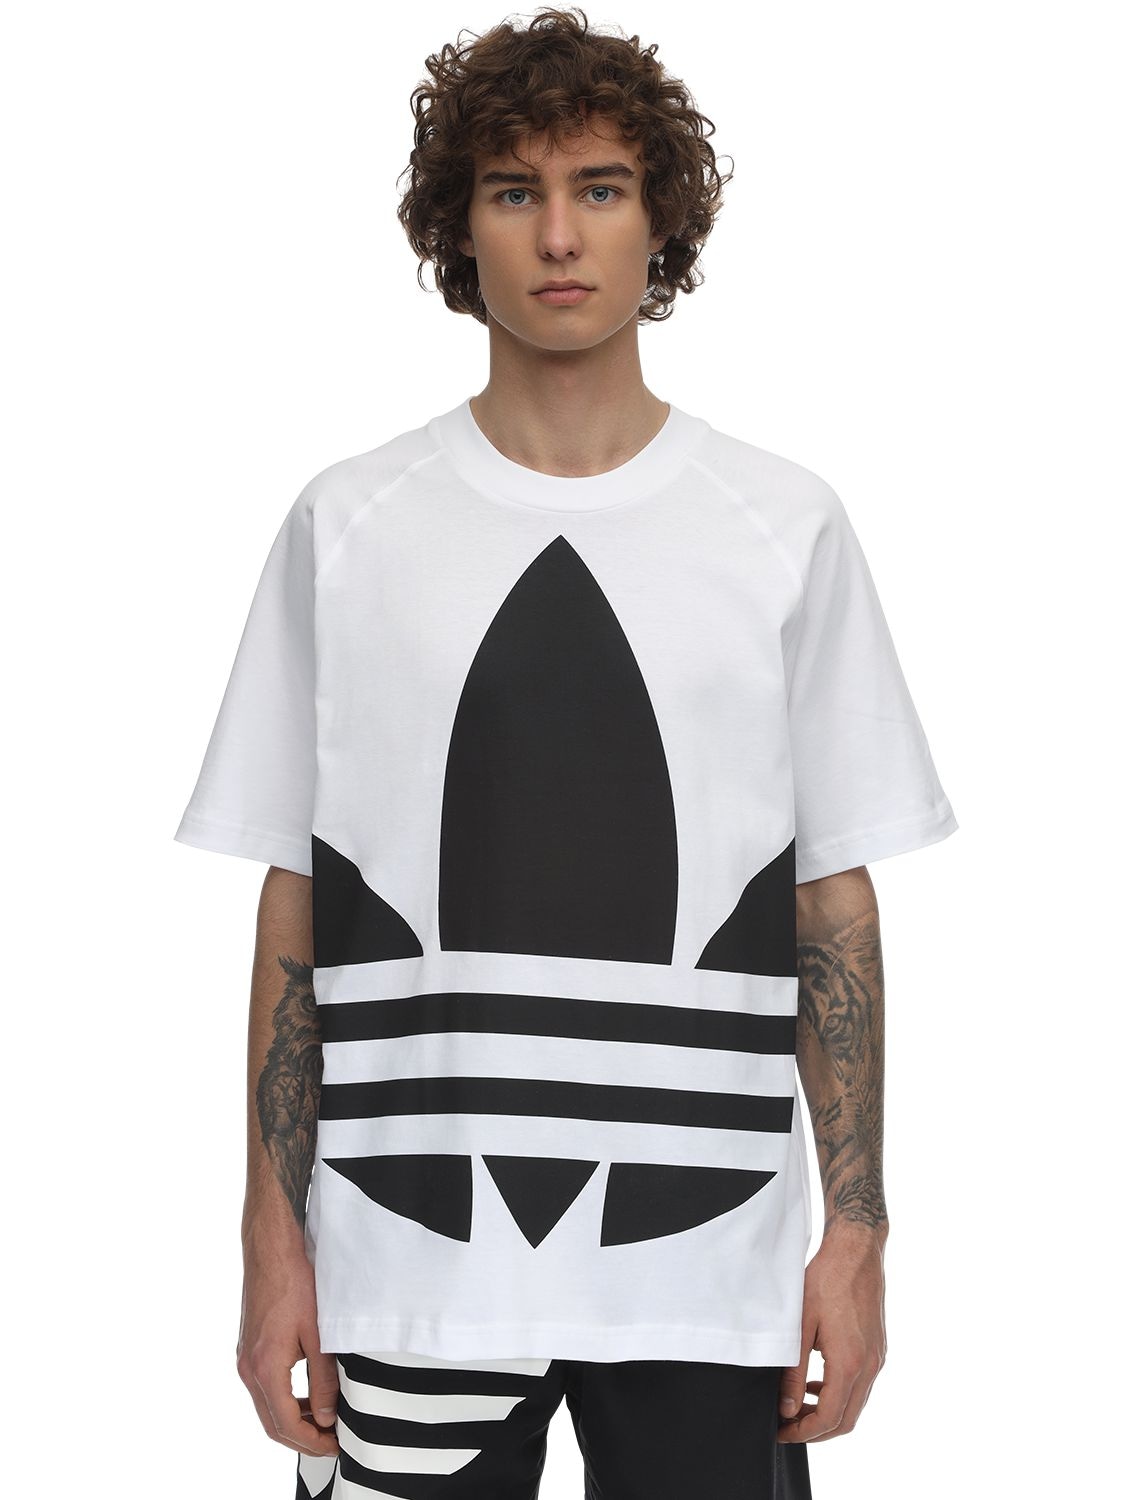 ADIDAS ORIGINALS "BIG TREFOIL"纯棉平纹针织T恤,71IGZU001-V0HJVEU1